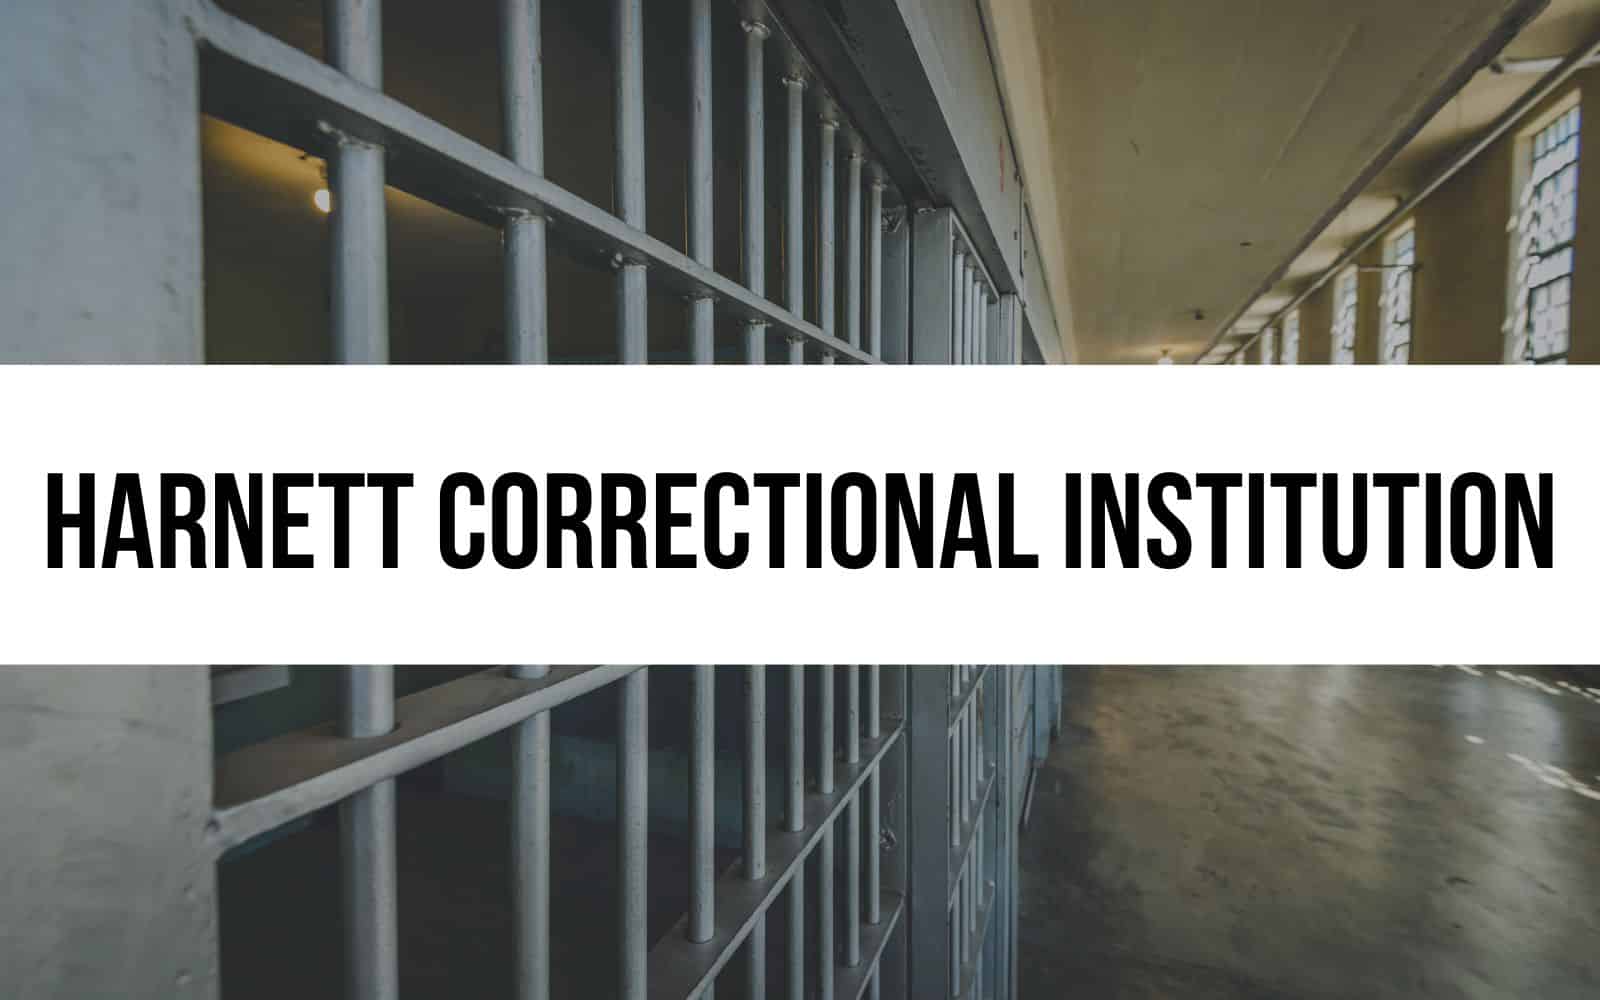 Harnett Correctional Institution